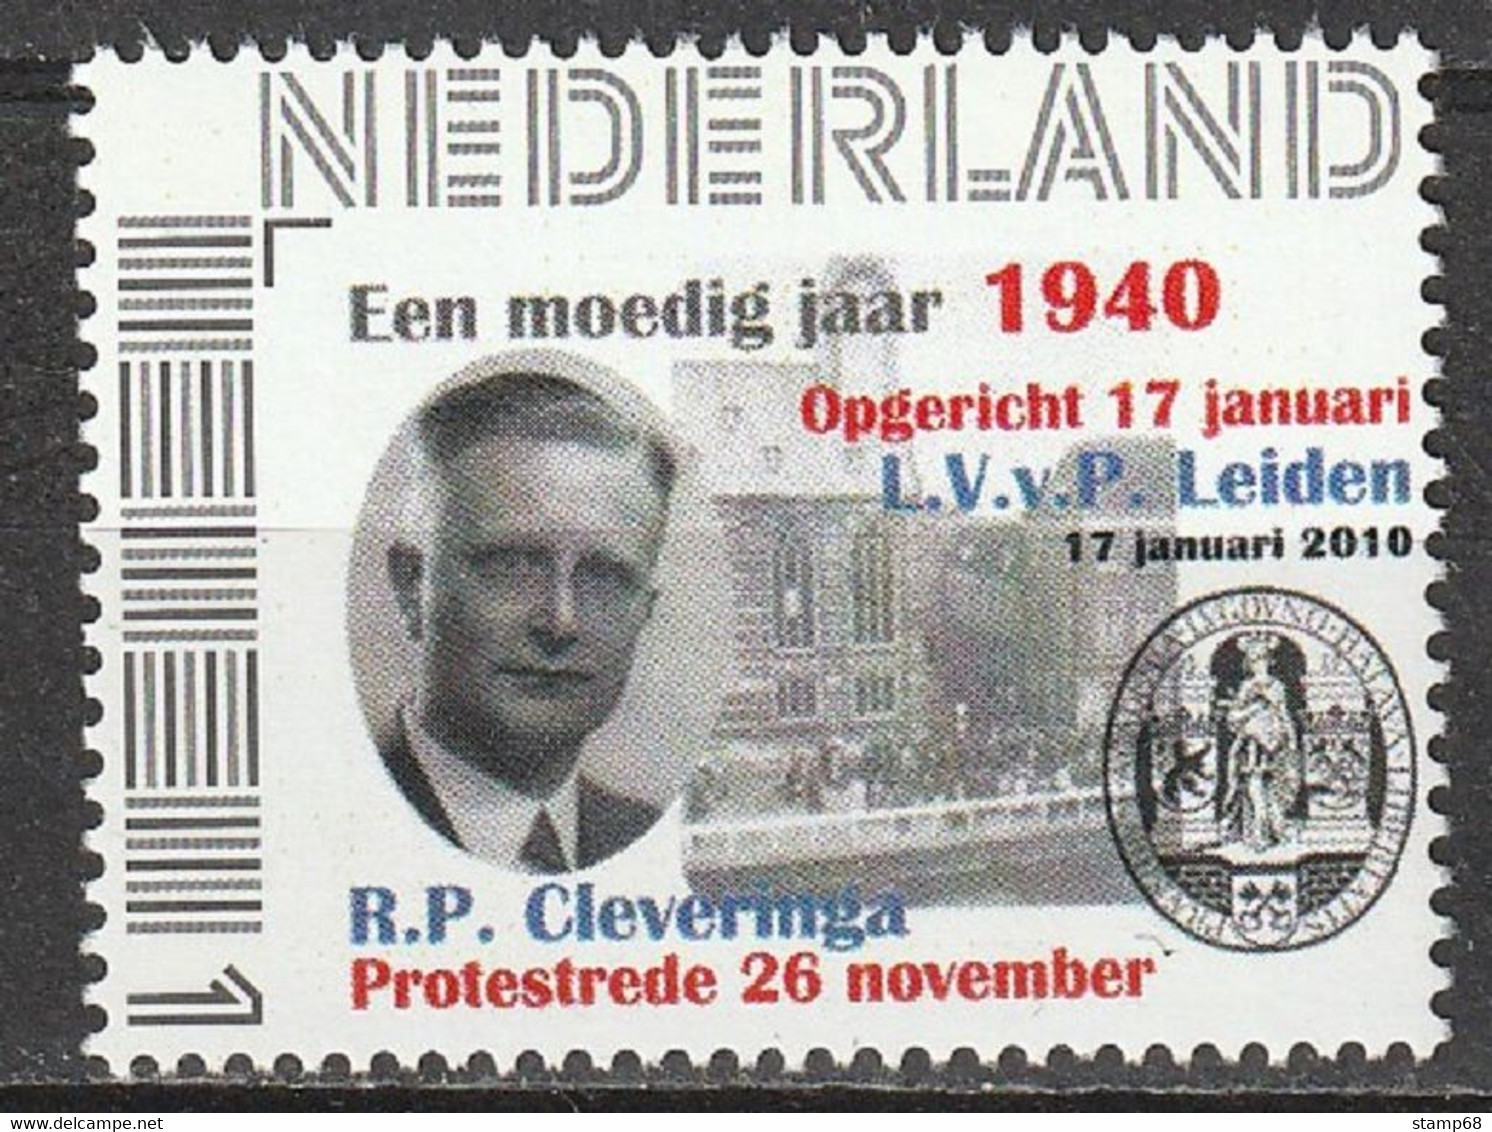 Nederland NVPH 2751 Persoonlijke Zegels Protestrede Cleveringa Oprichting LvVP Leiden 1940-2010 MNH Postfris - Personalisierte Briefmarken